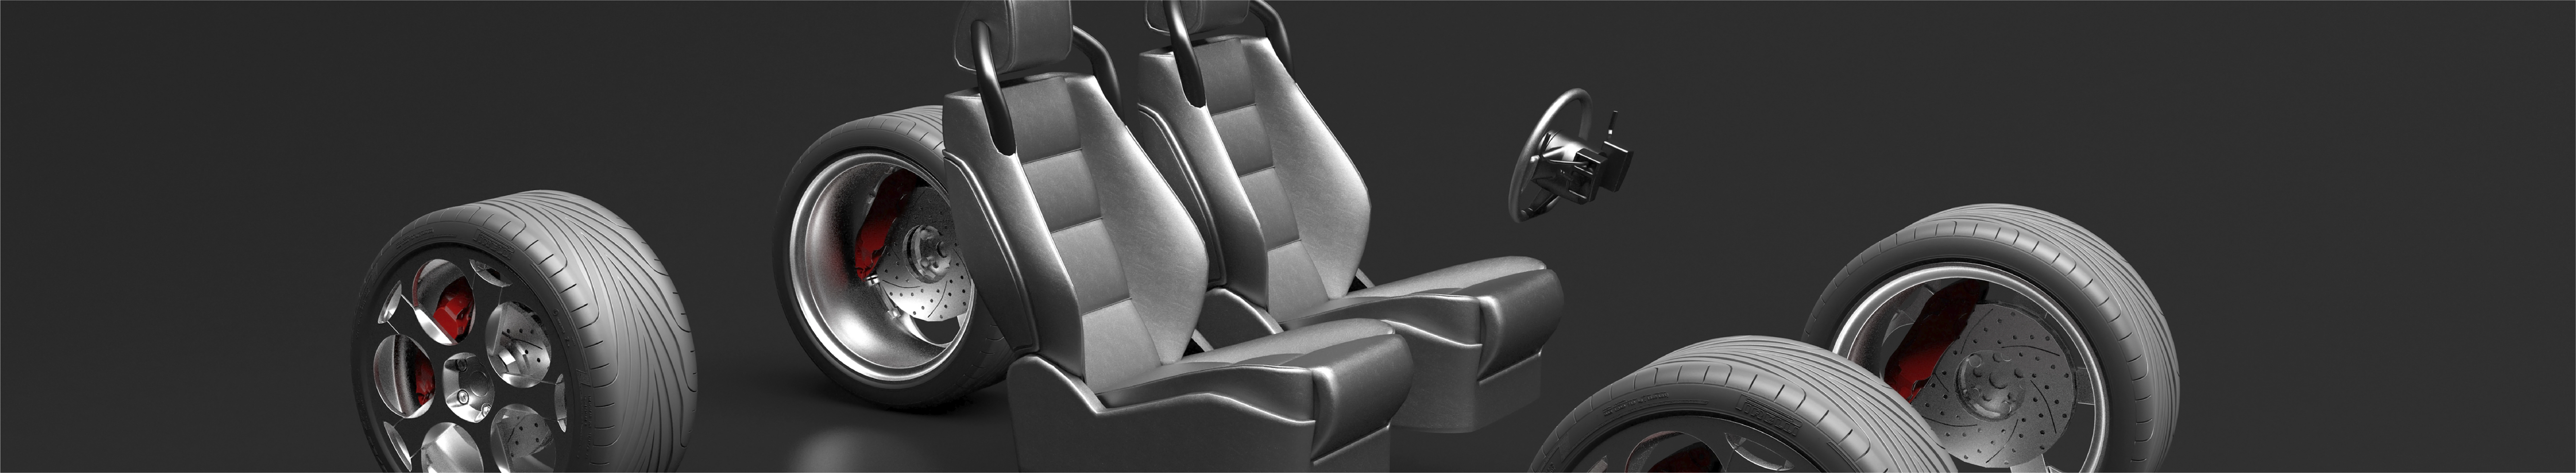 EV SN Seats - Banner Image - 2560 x 470.png